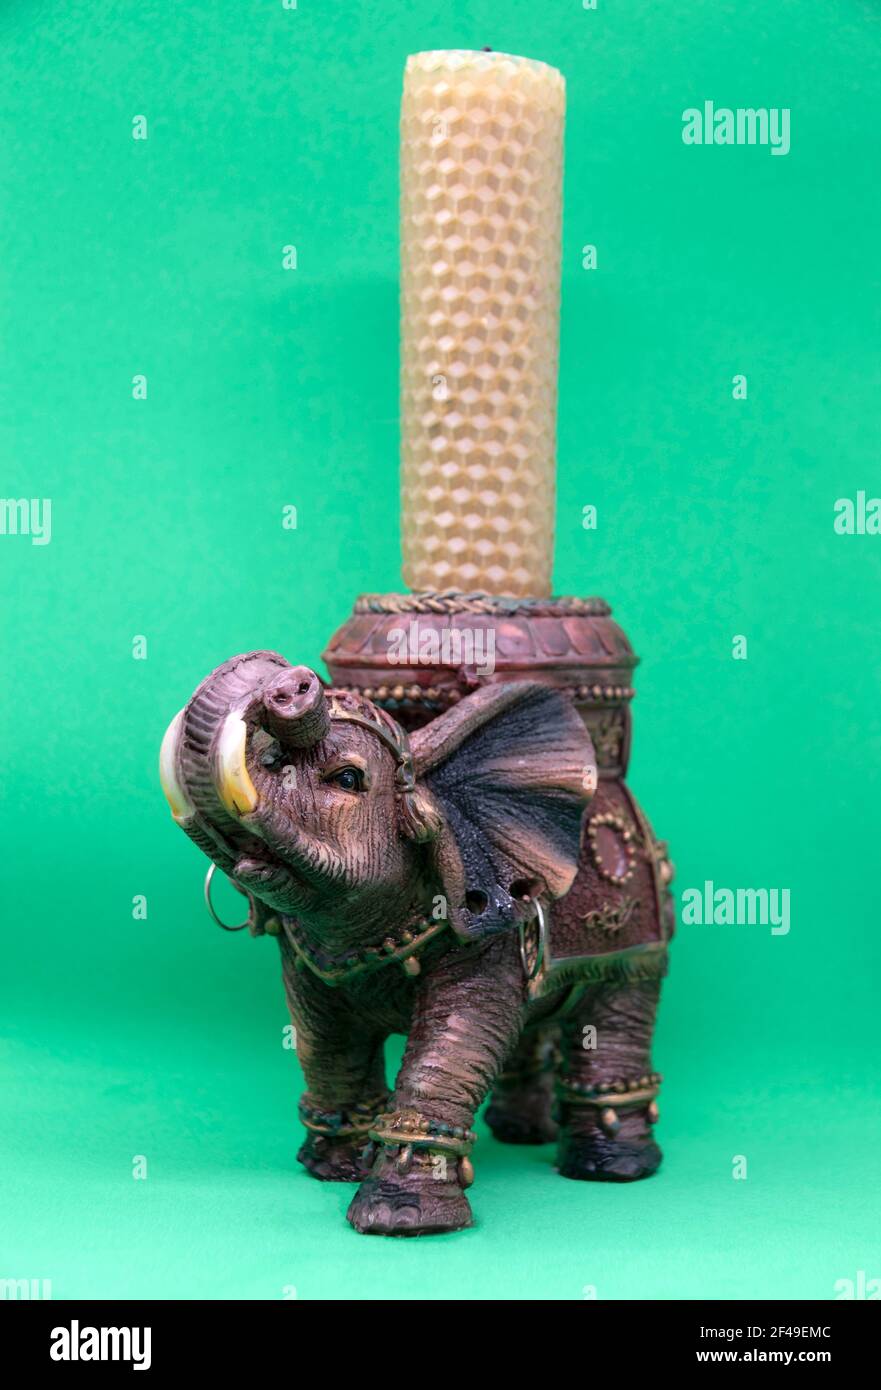 Figurine d'un éléphant indien sur fond vert. Chandelier en forme d'éléphant indien. Banque D'Images